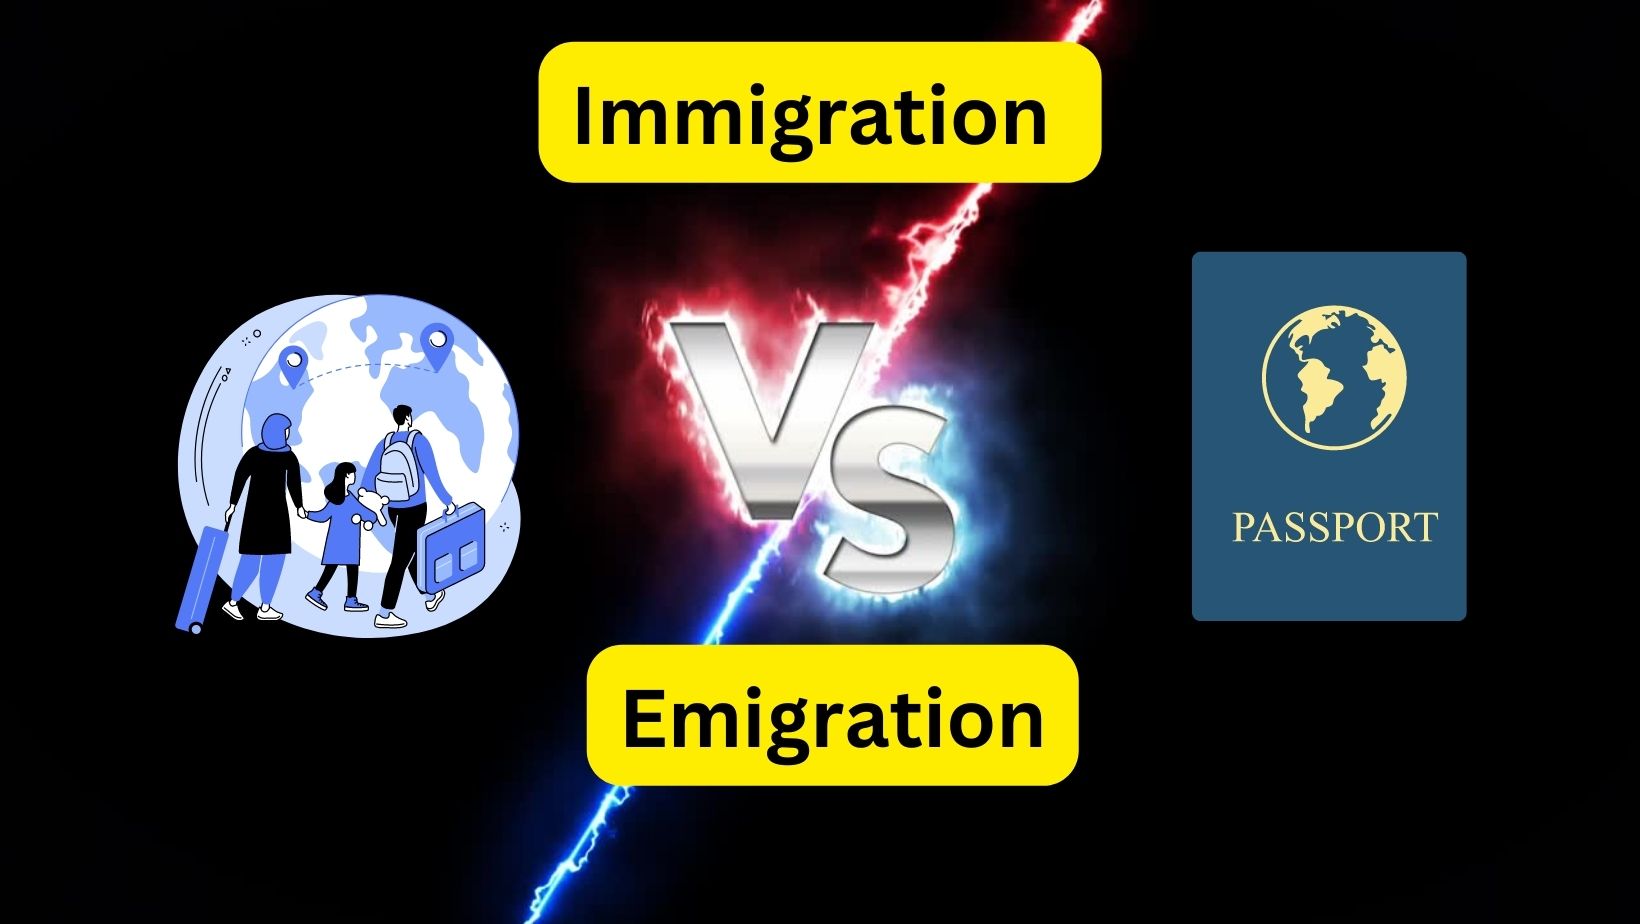 Immigration vs Emigration